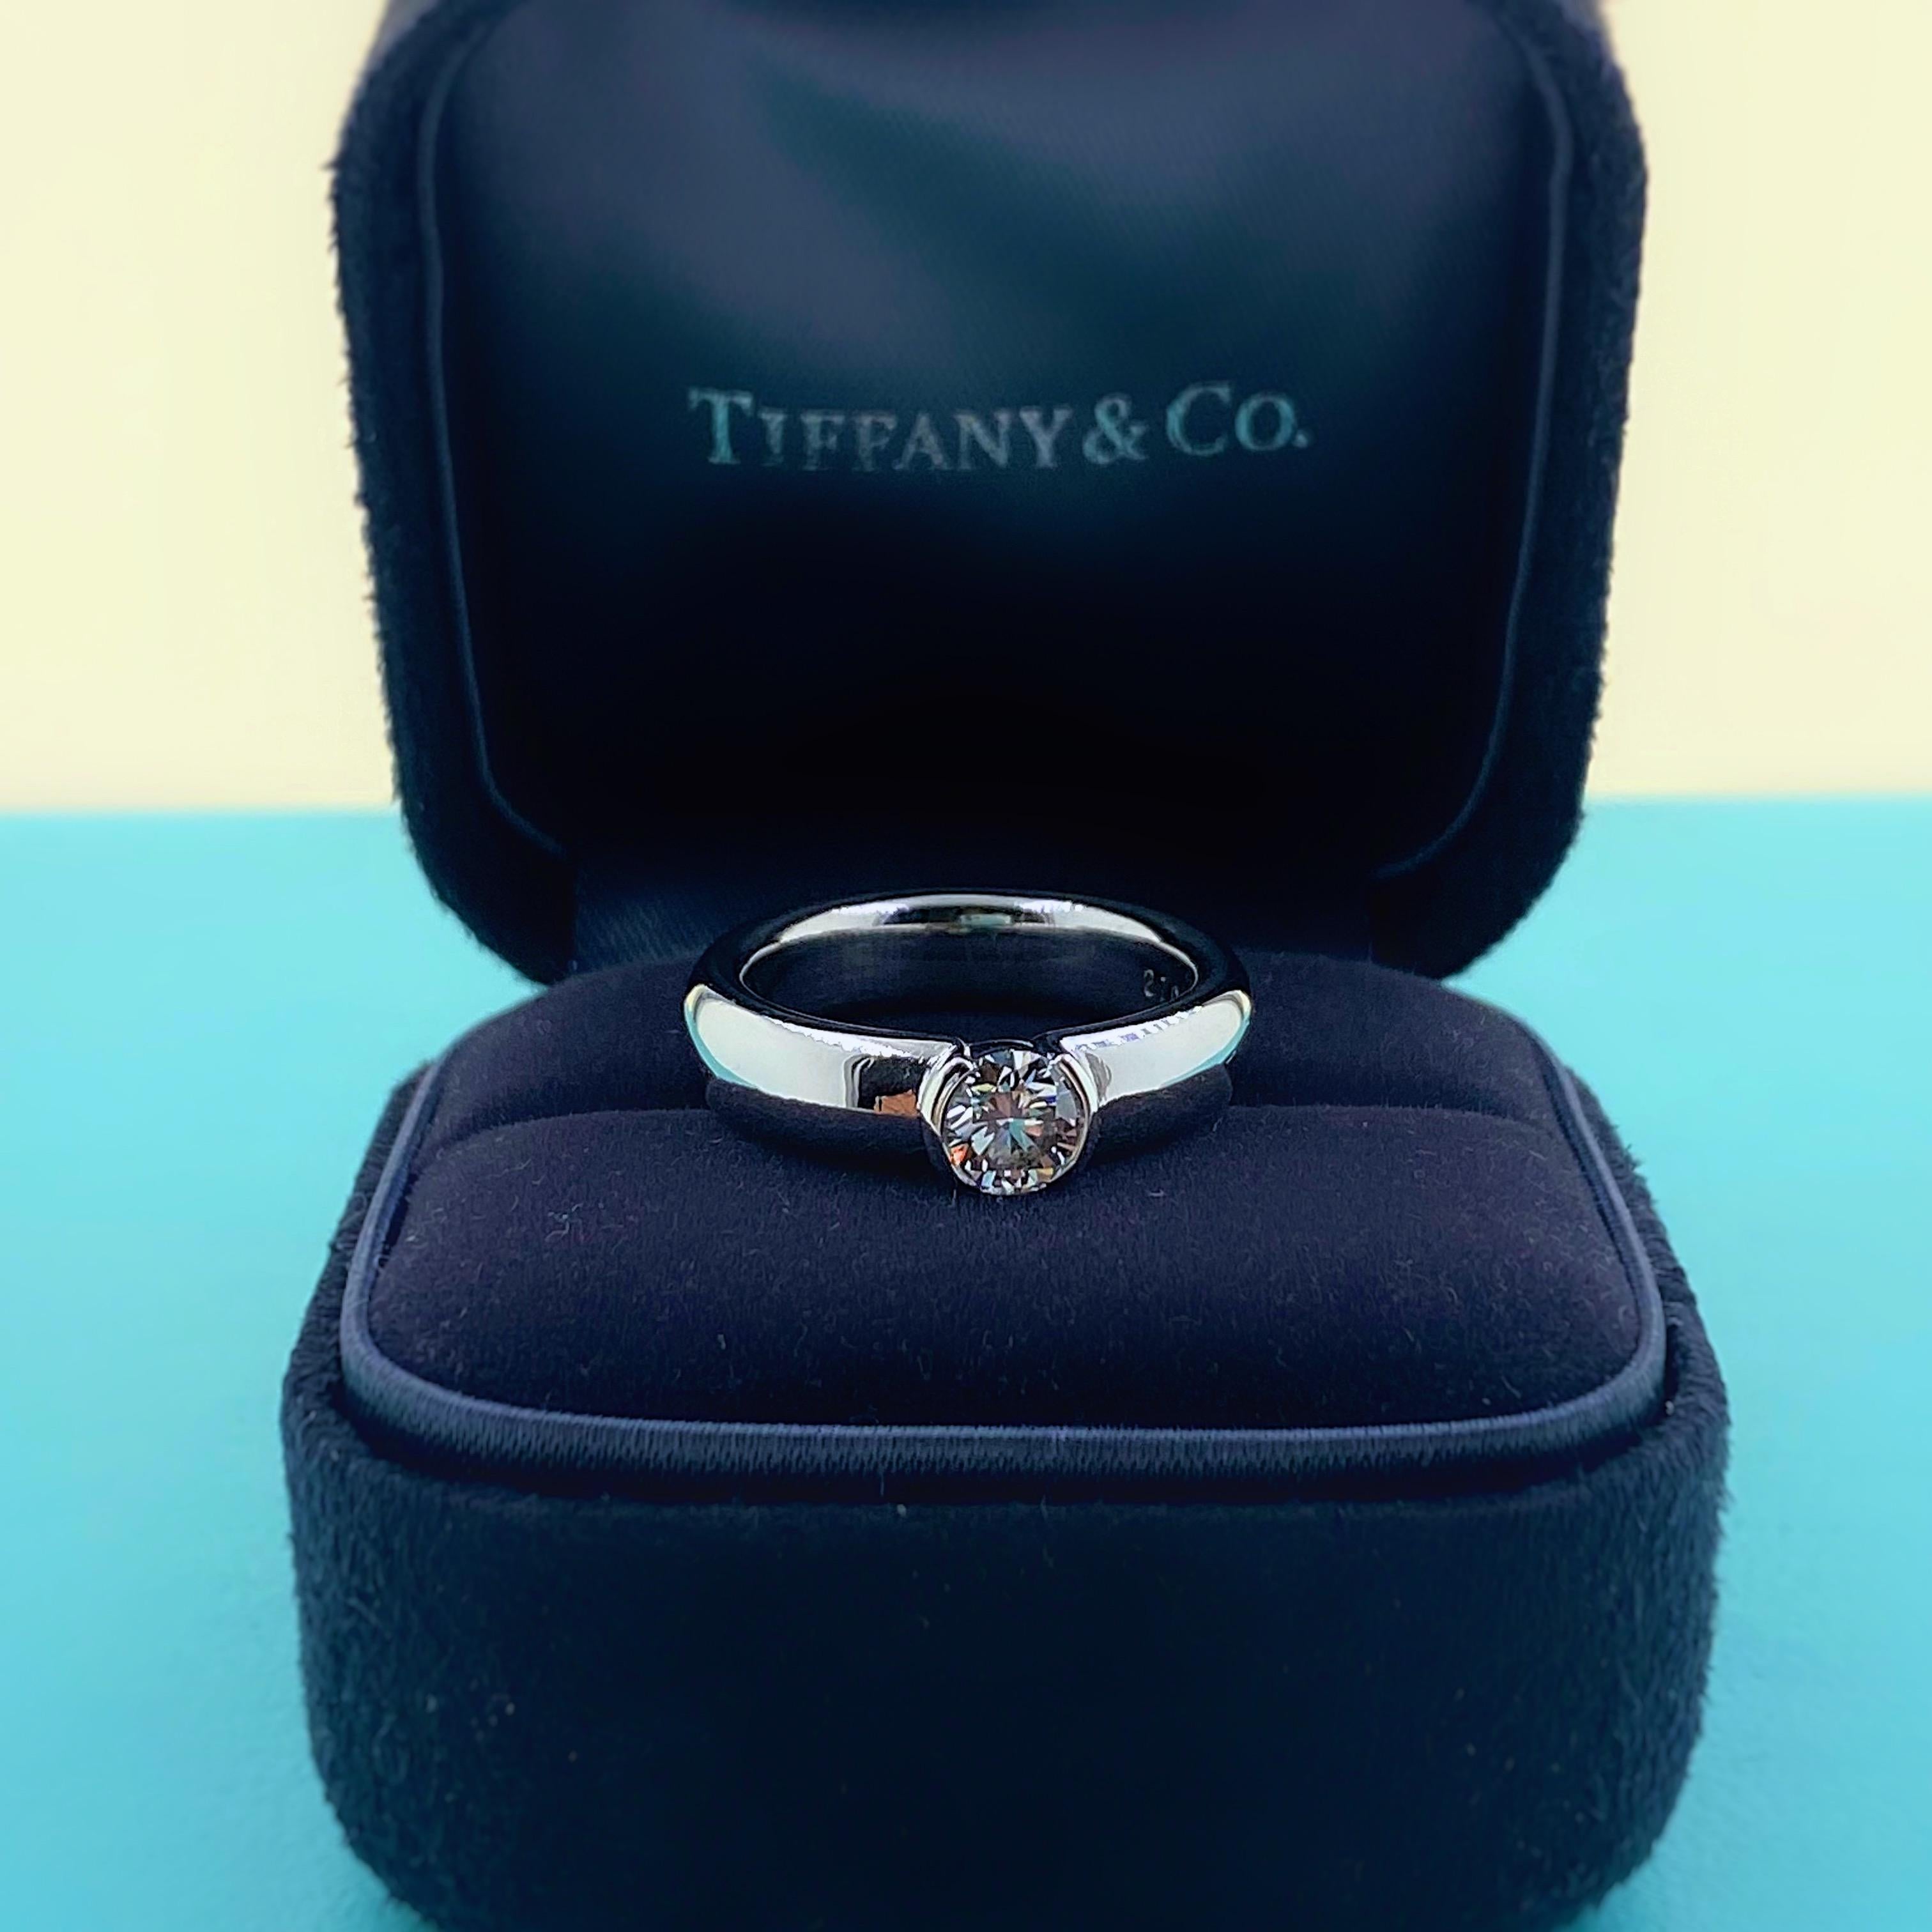 tiffany etoile engagement ring